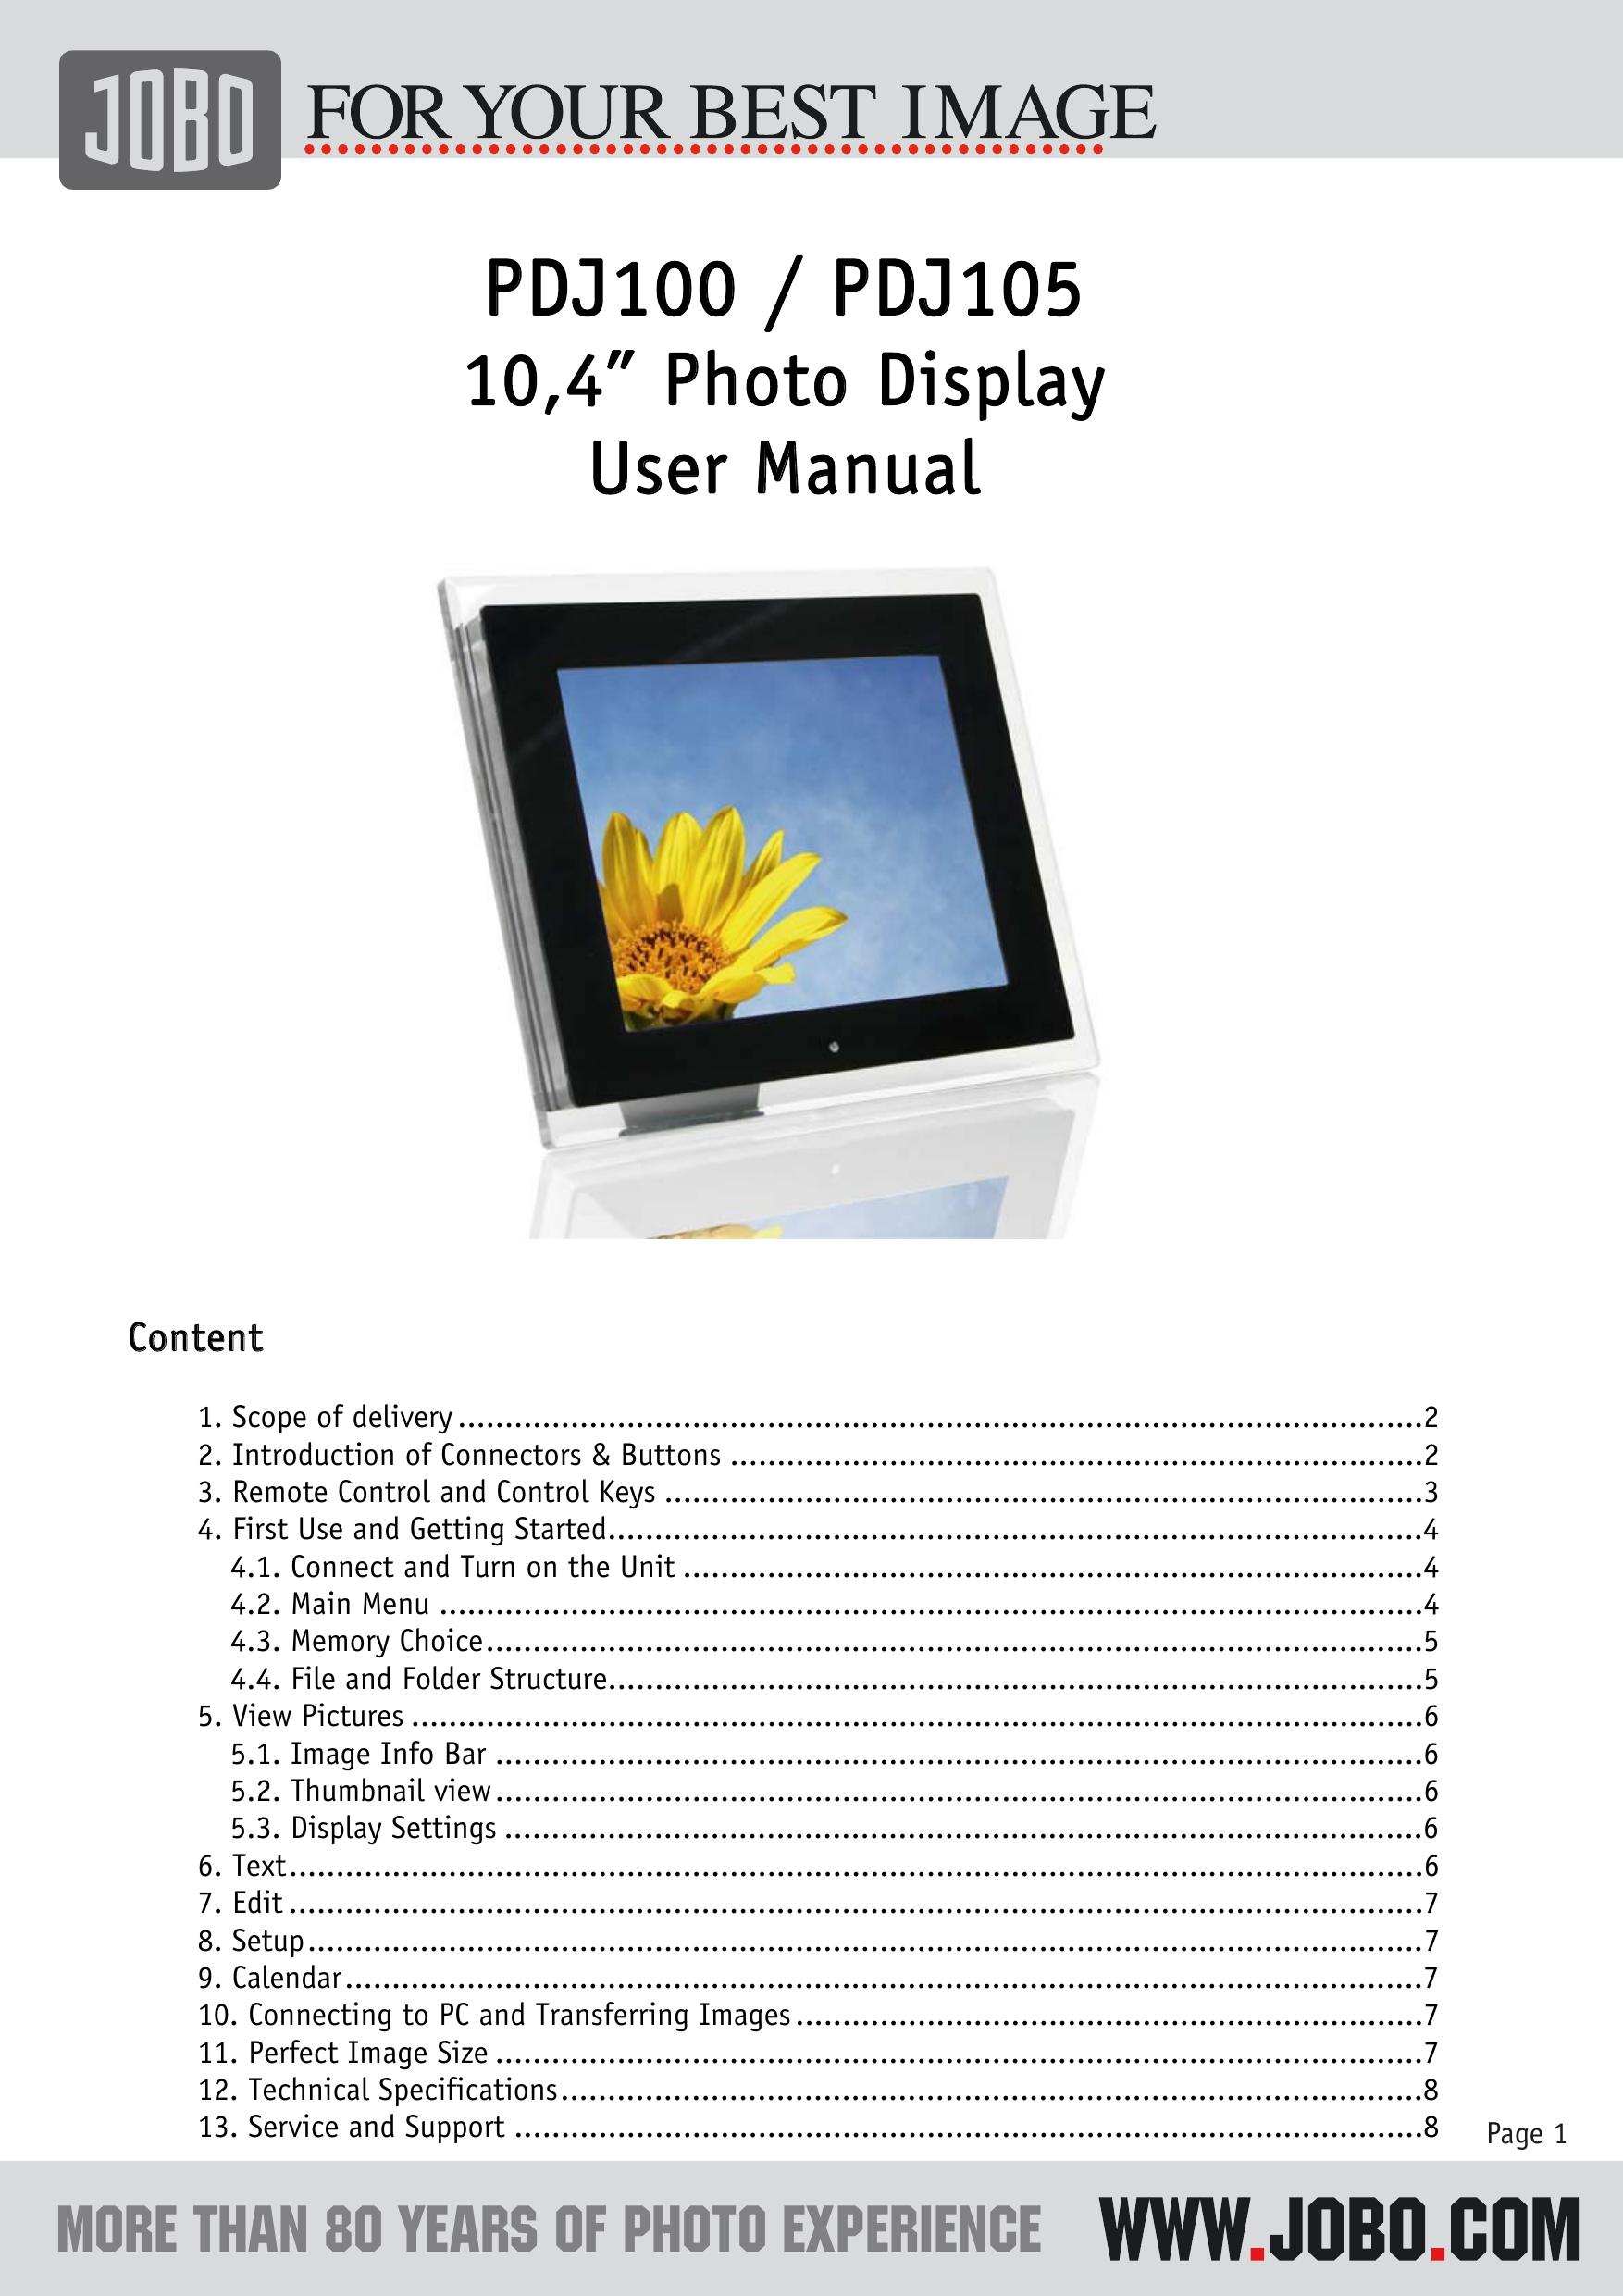 JOBO PDJ100 Digital Photo Frame User Manual